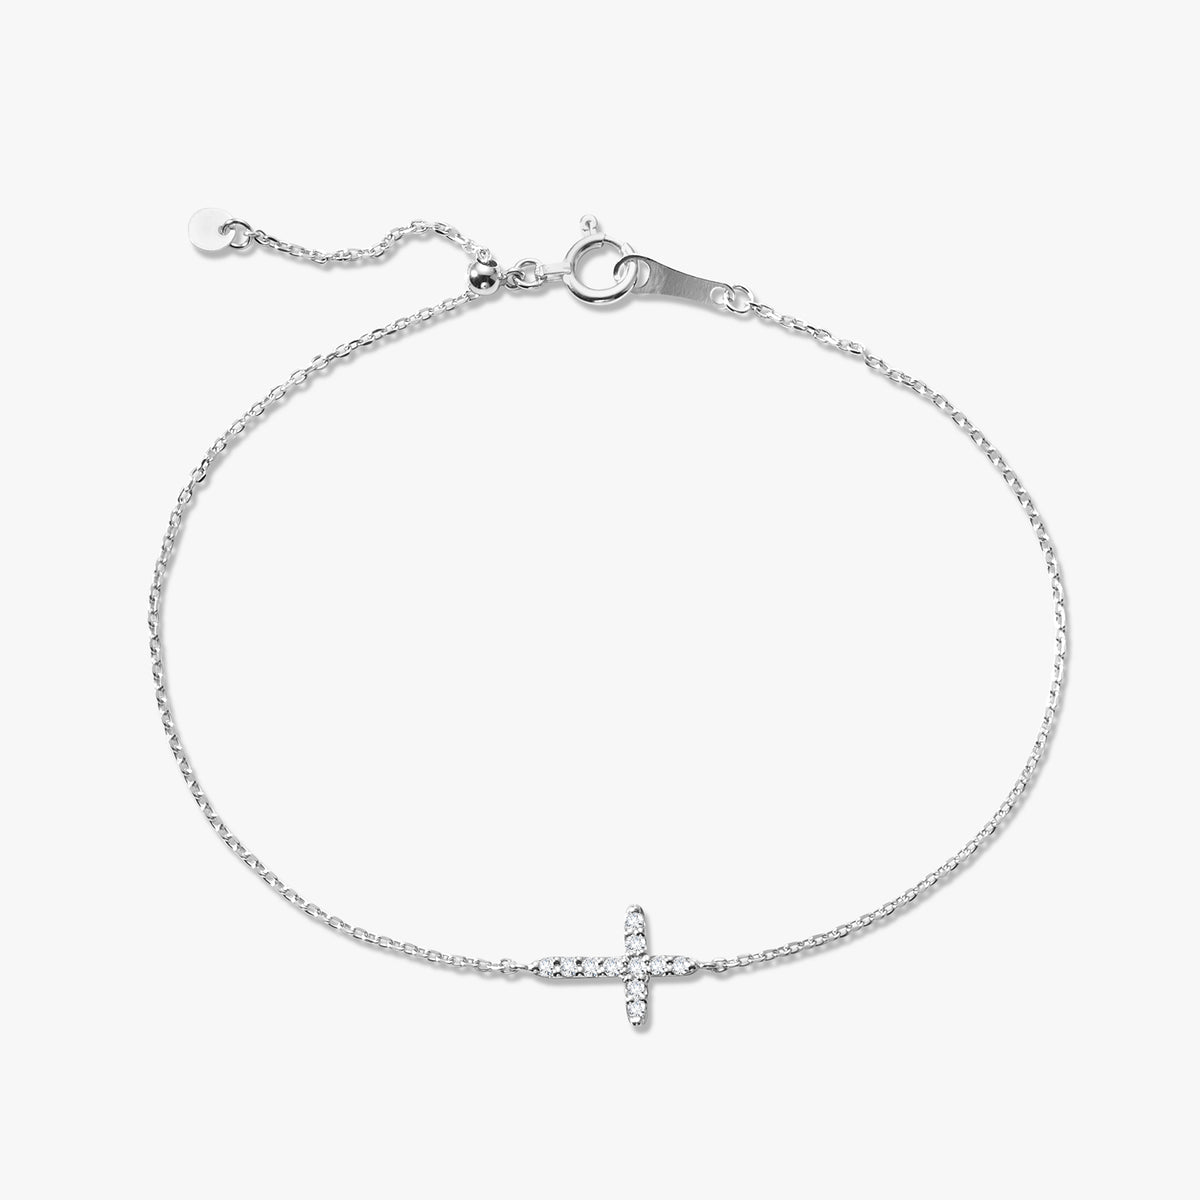 Cross Cute Dangle Jewelry, Charms For Earrings, Necklace, Bracelet